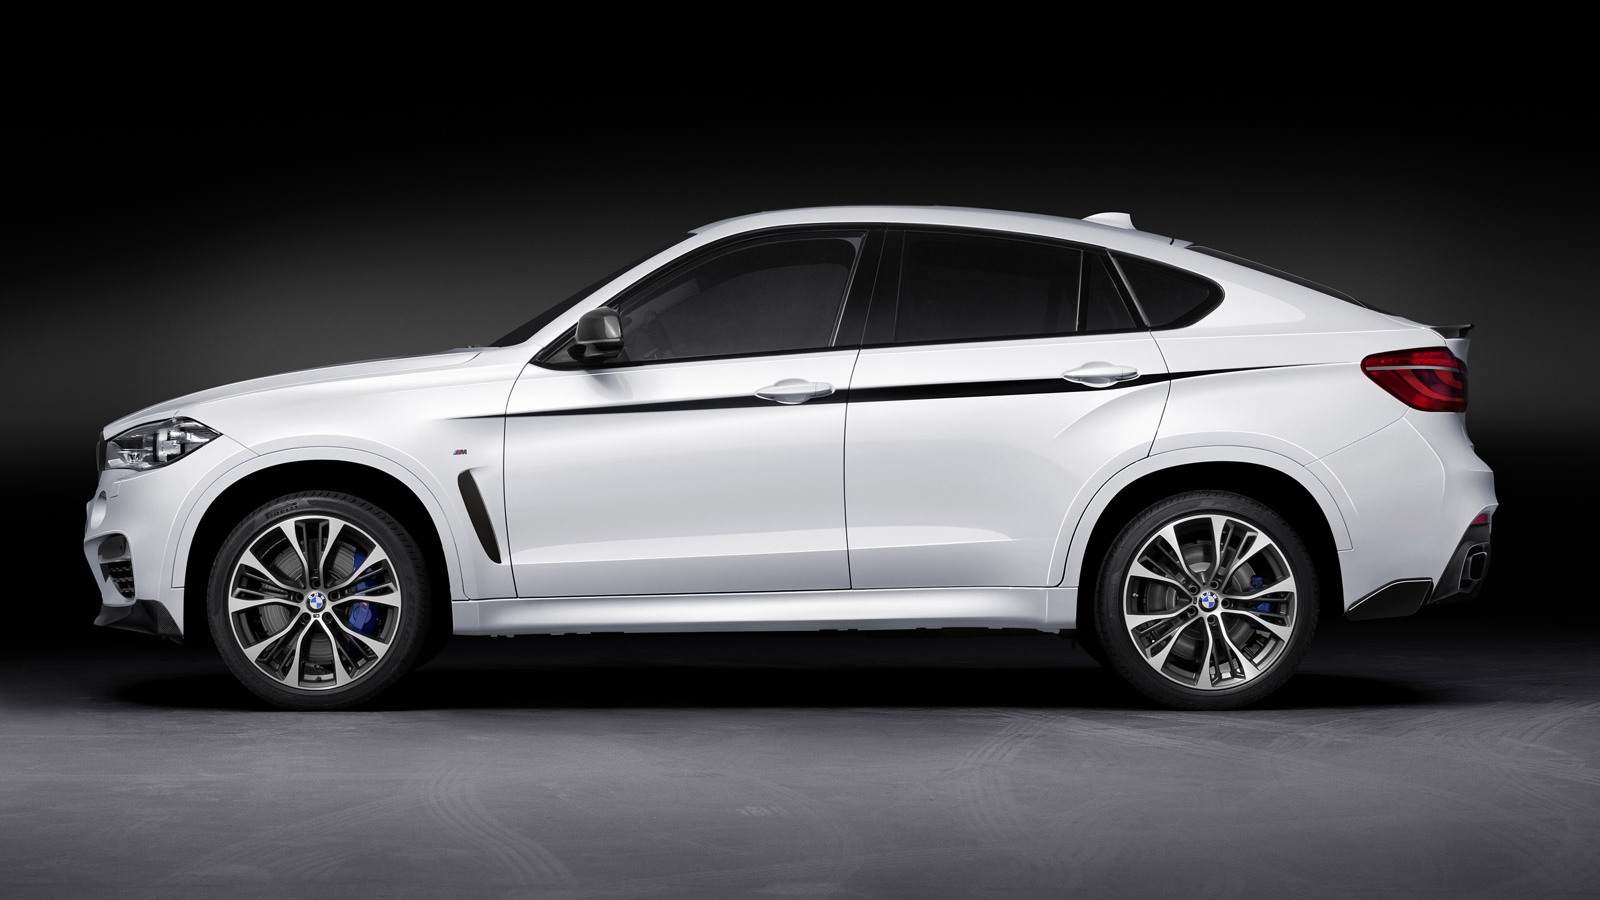 2015 BMW X6 with BMW M Performance upgrades